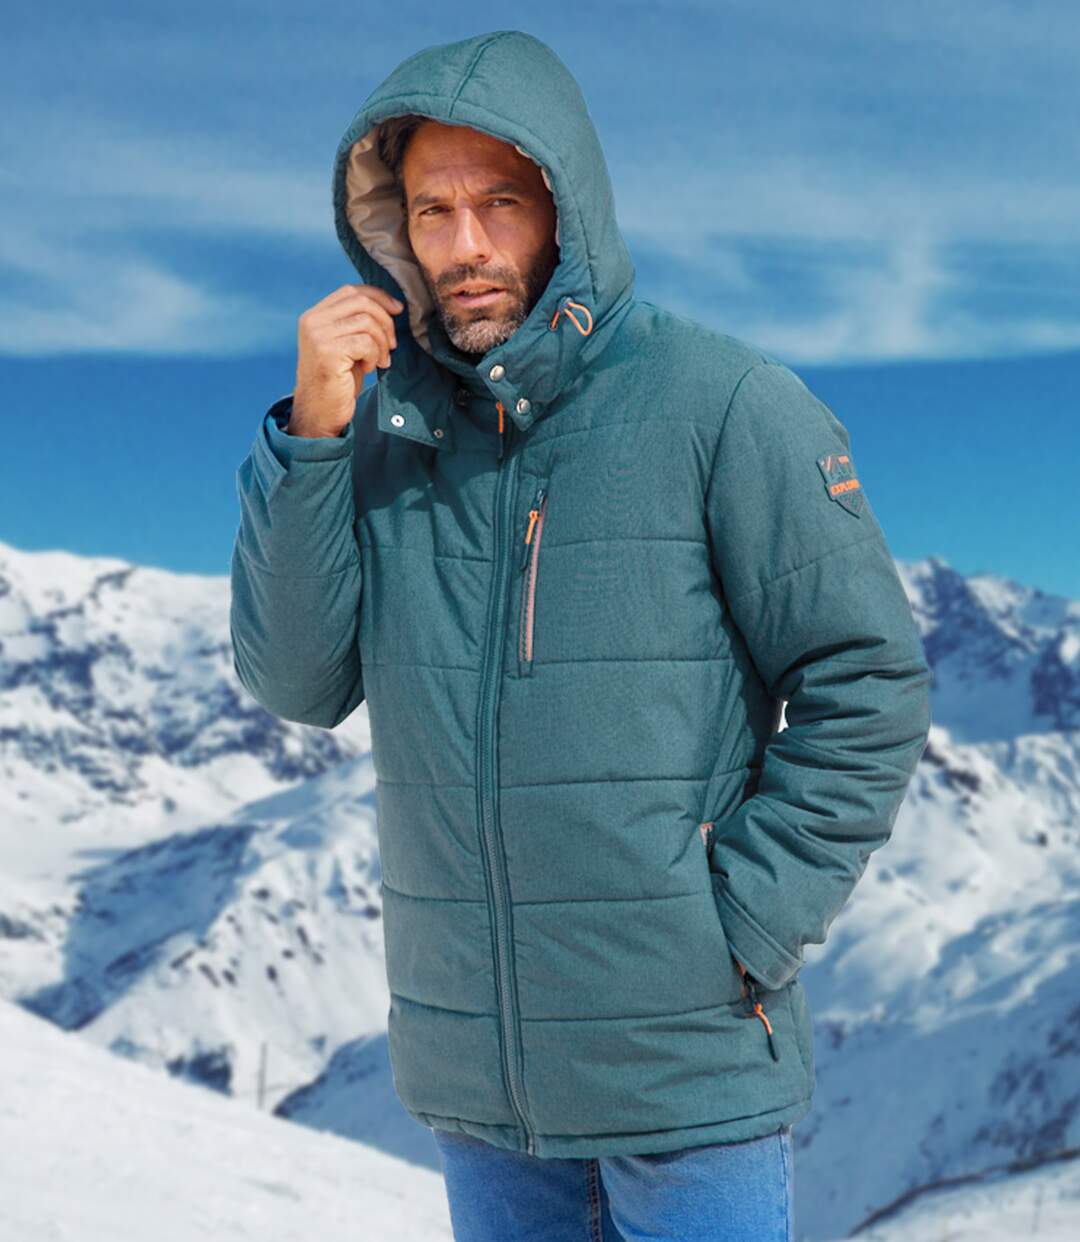 Prešívaná bunda s odnímateľnou kapucňou Snow Atlas For Men